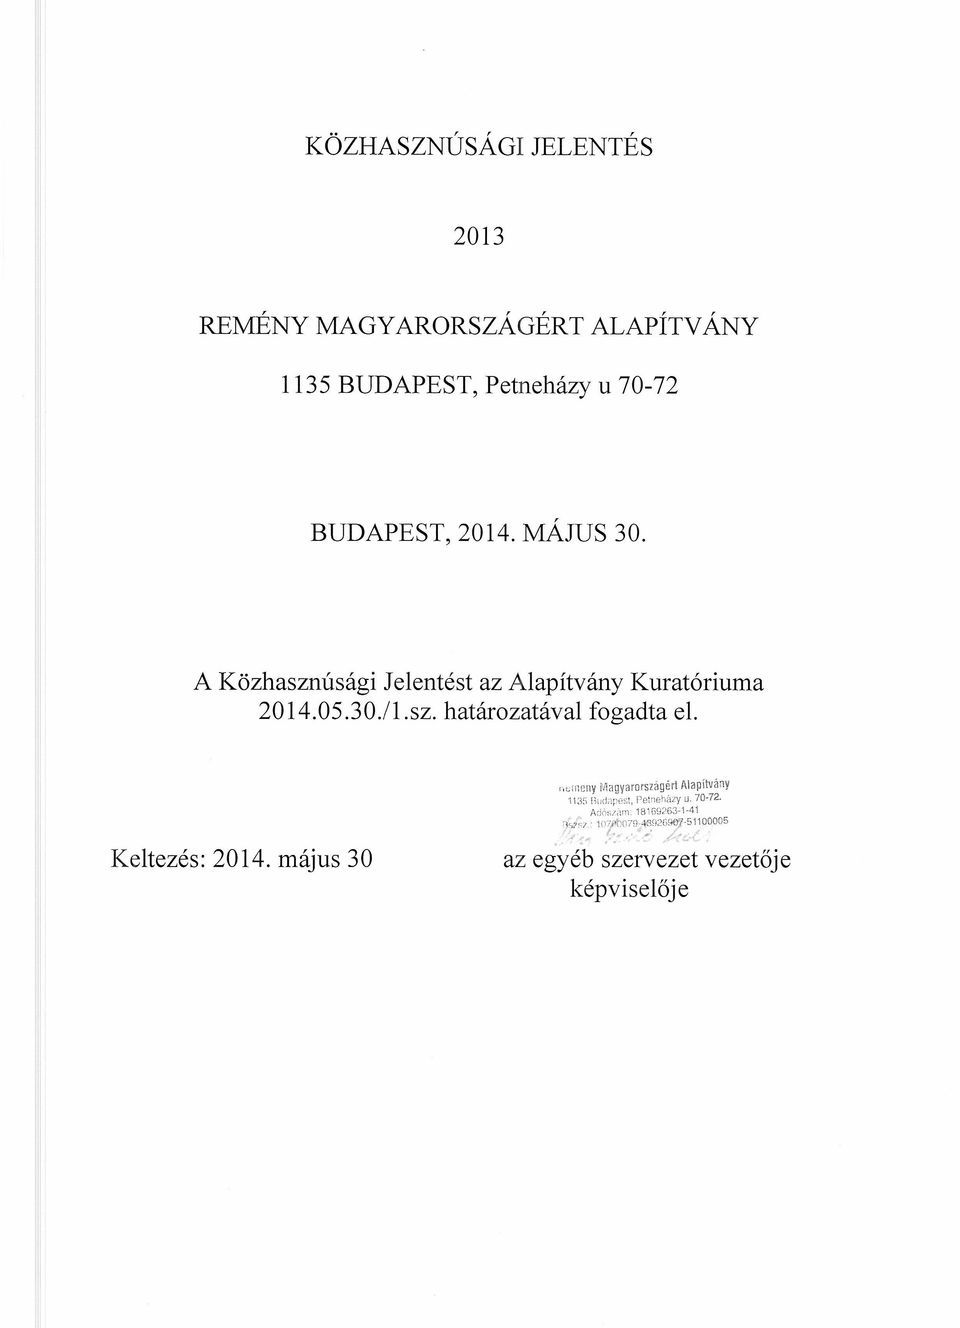 Keltezés: 2014. május 30 ',clncny Magyarországért I\lapítvánV 1135 jl"rl2pes1, Pe1neházy u. 70-72.